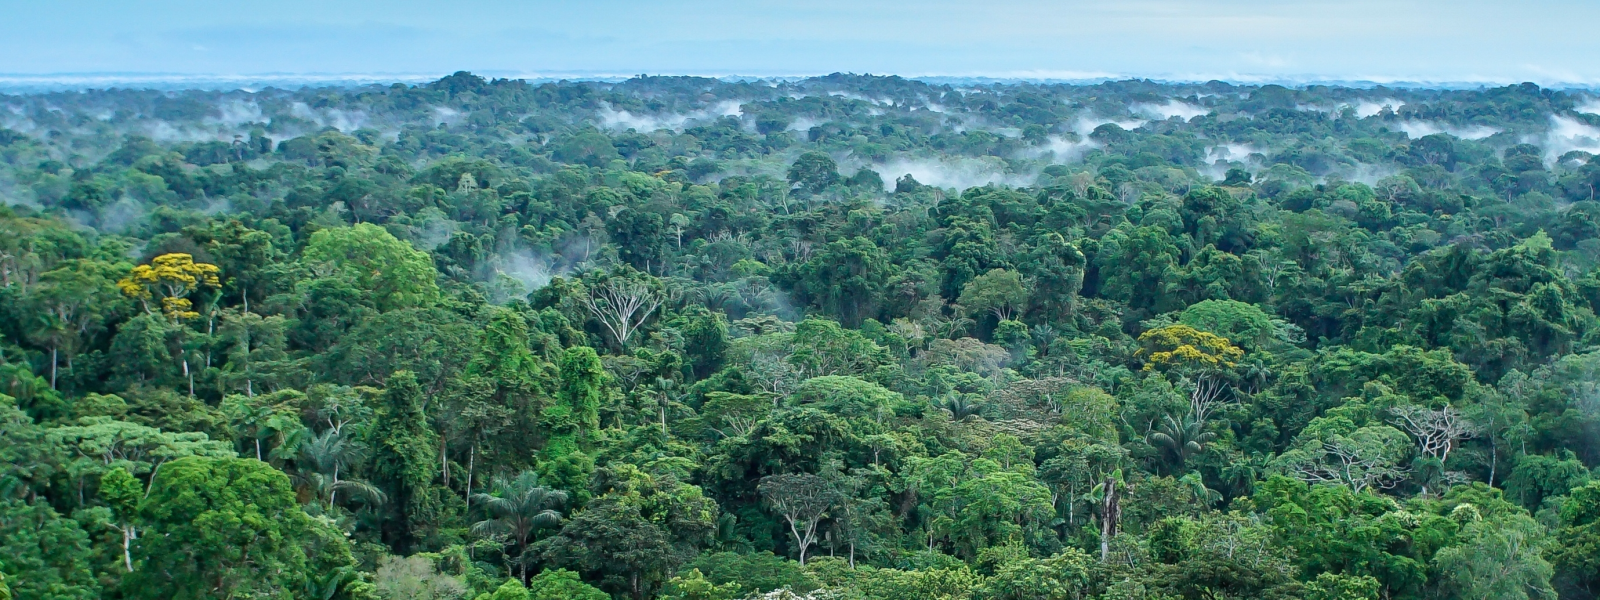 Amazon landscape in Yasuní National Park, Ecuador